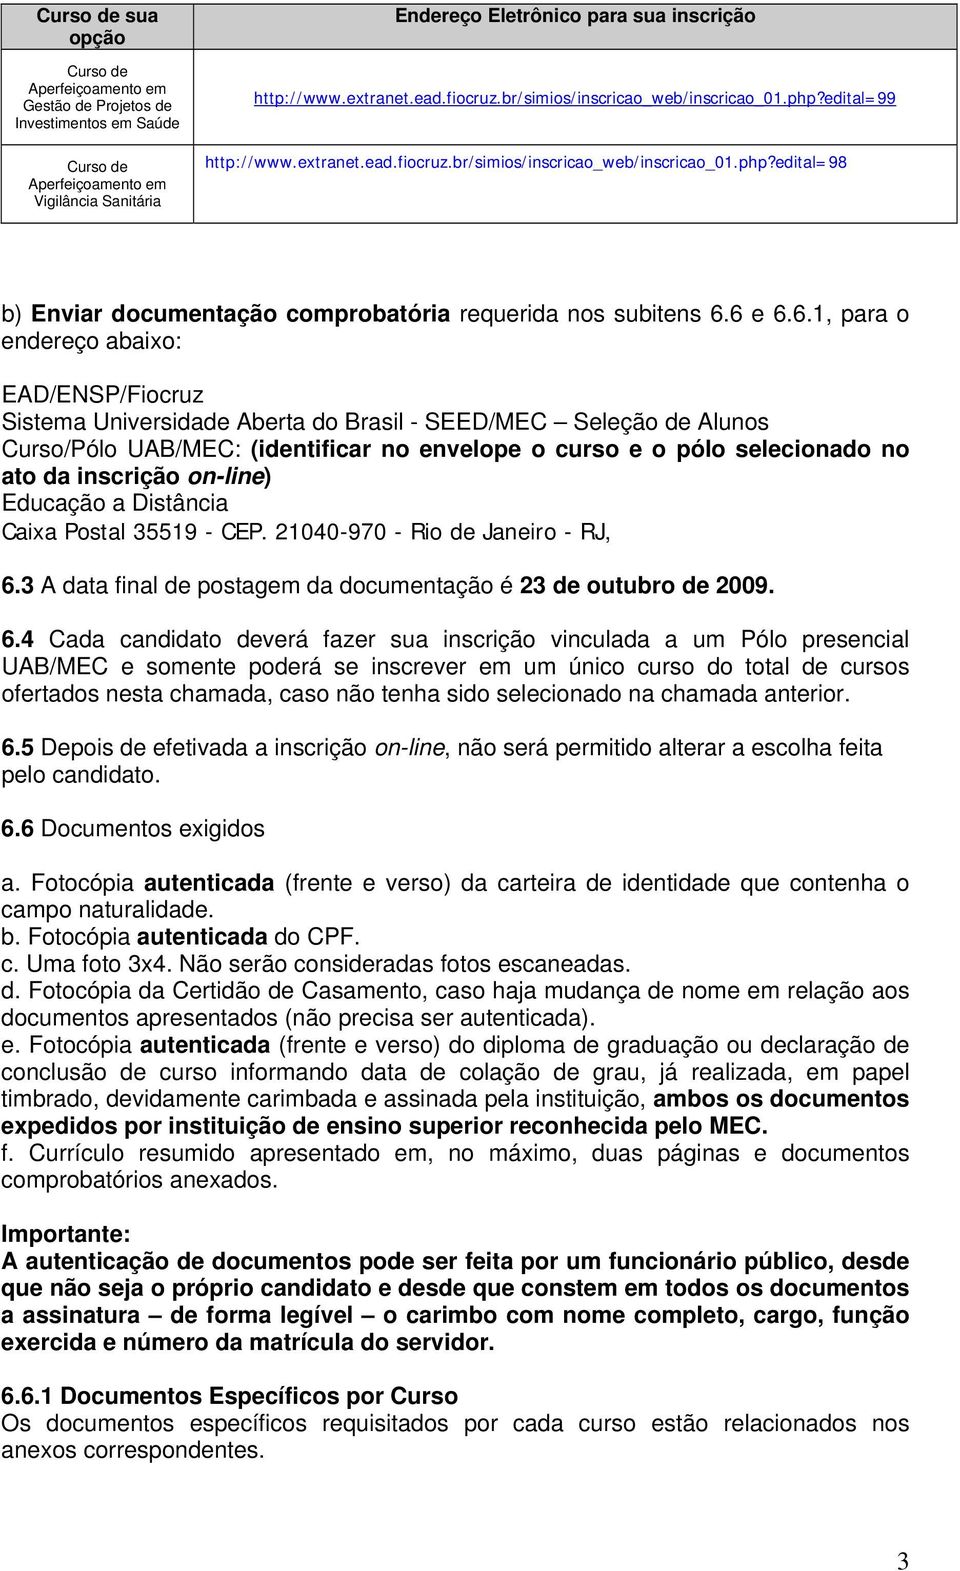 6 e 6.6.1, para o endereço abaixo: EAD/ENSP/Fiocruz Sistema Universidade Aberta do Brasil - SEED/MEC Seleção de Alunos Curso/Pólo UAB/MEC: (identificar no envelope o curso e o pólo selecionado no ato